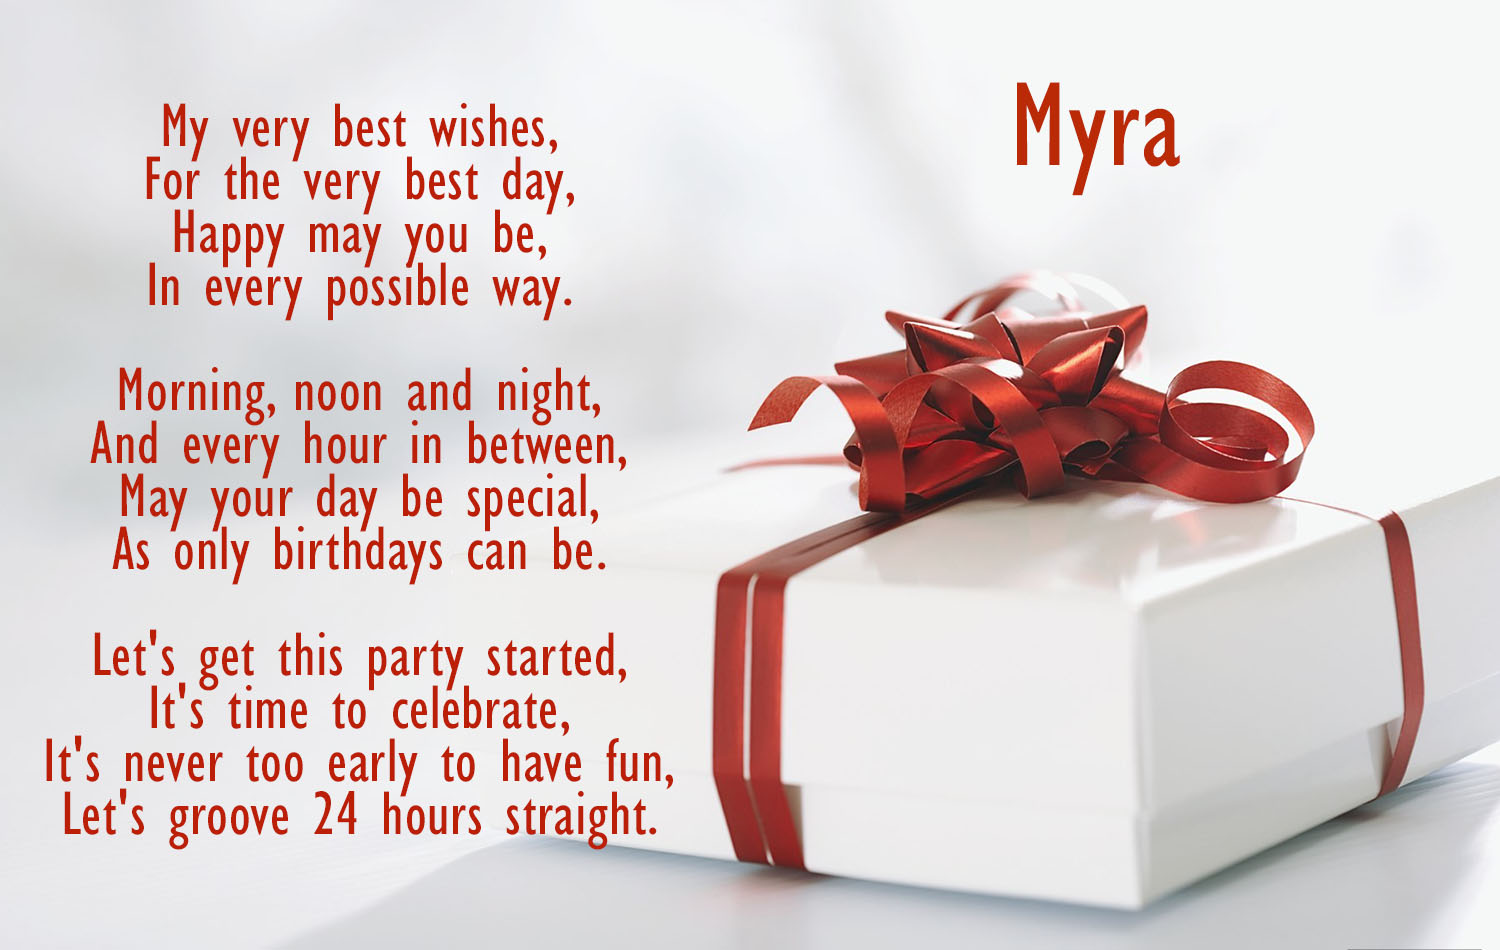 Birthday poems for Myra!